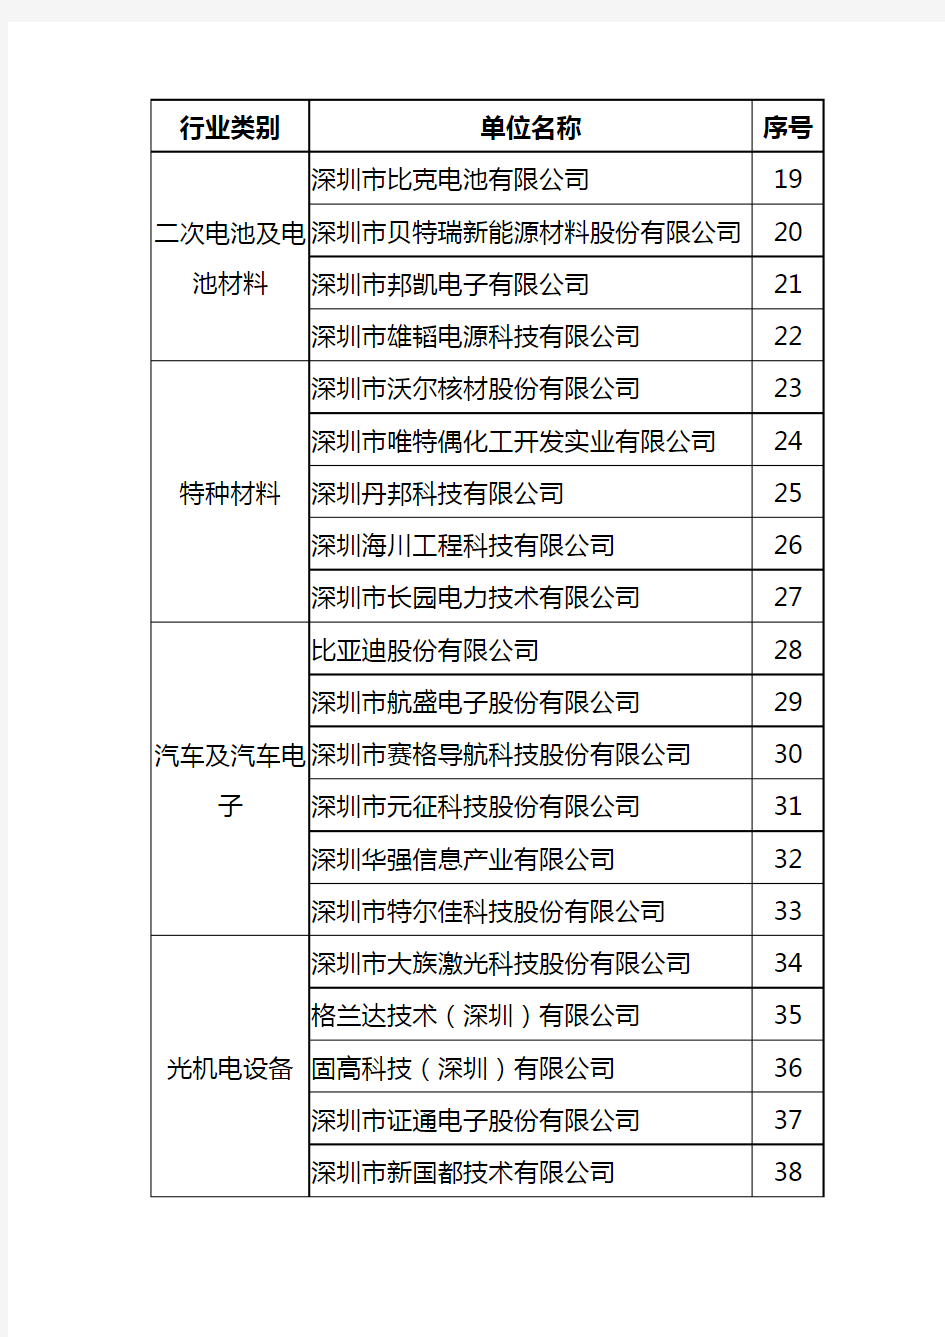 深圳市自主创新行业龙头企业第一批名单